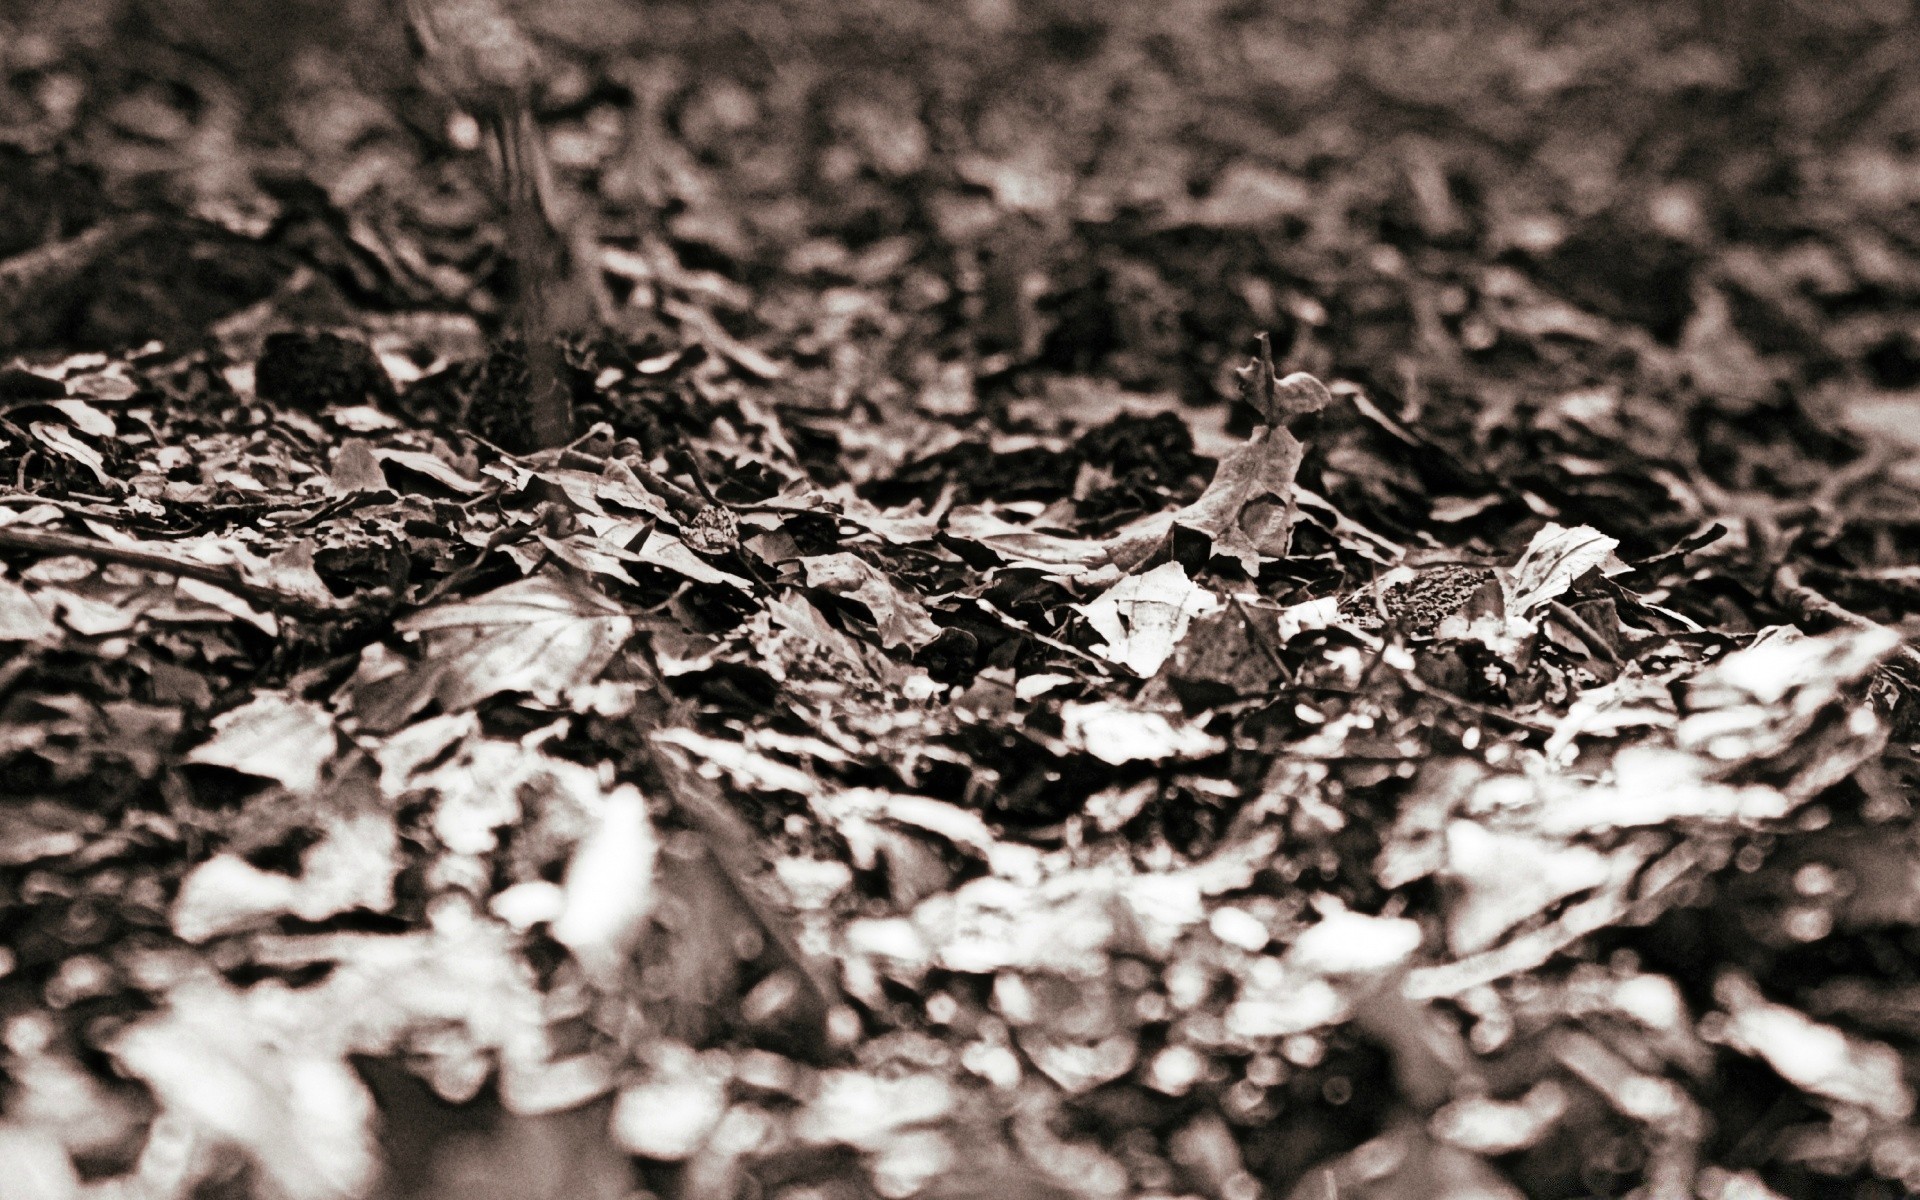 винтаж рабочего стола текстура аннотация шаблон природа лист монохромный крупным планом землю сухой осень древесины ткань